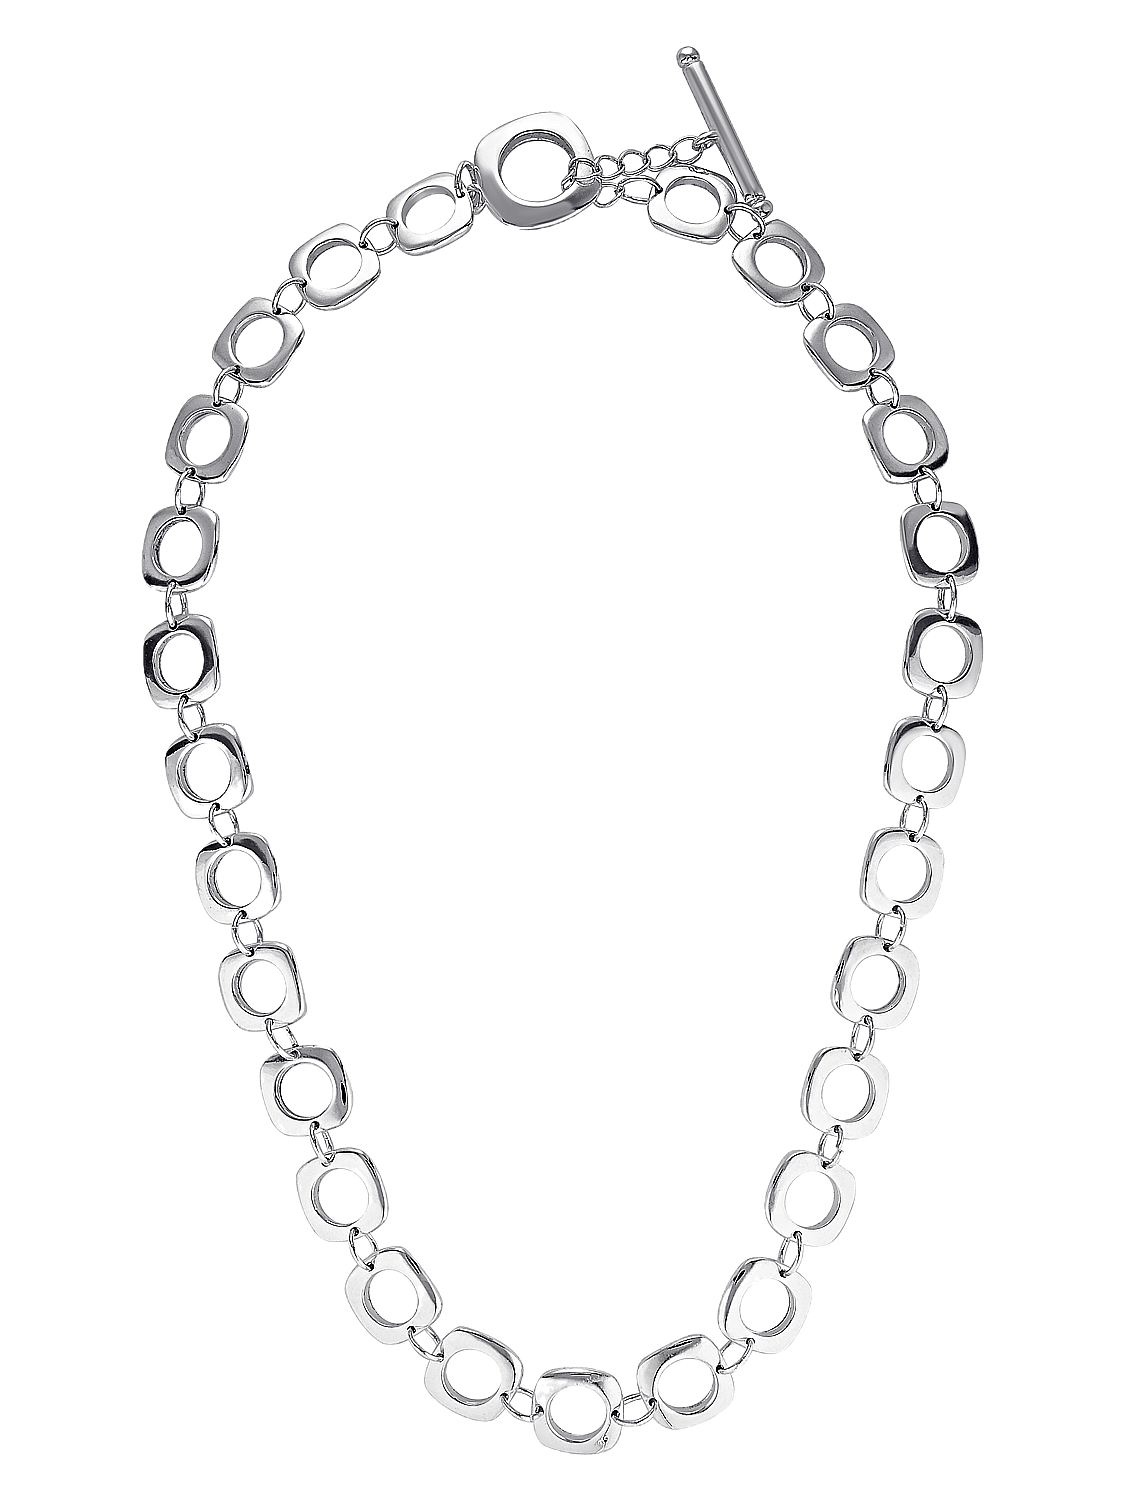 Retro silver necklace